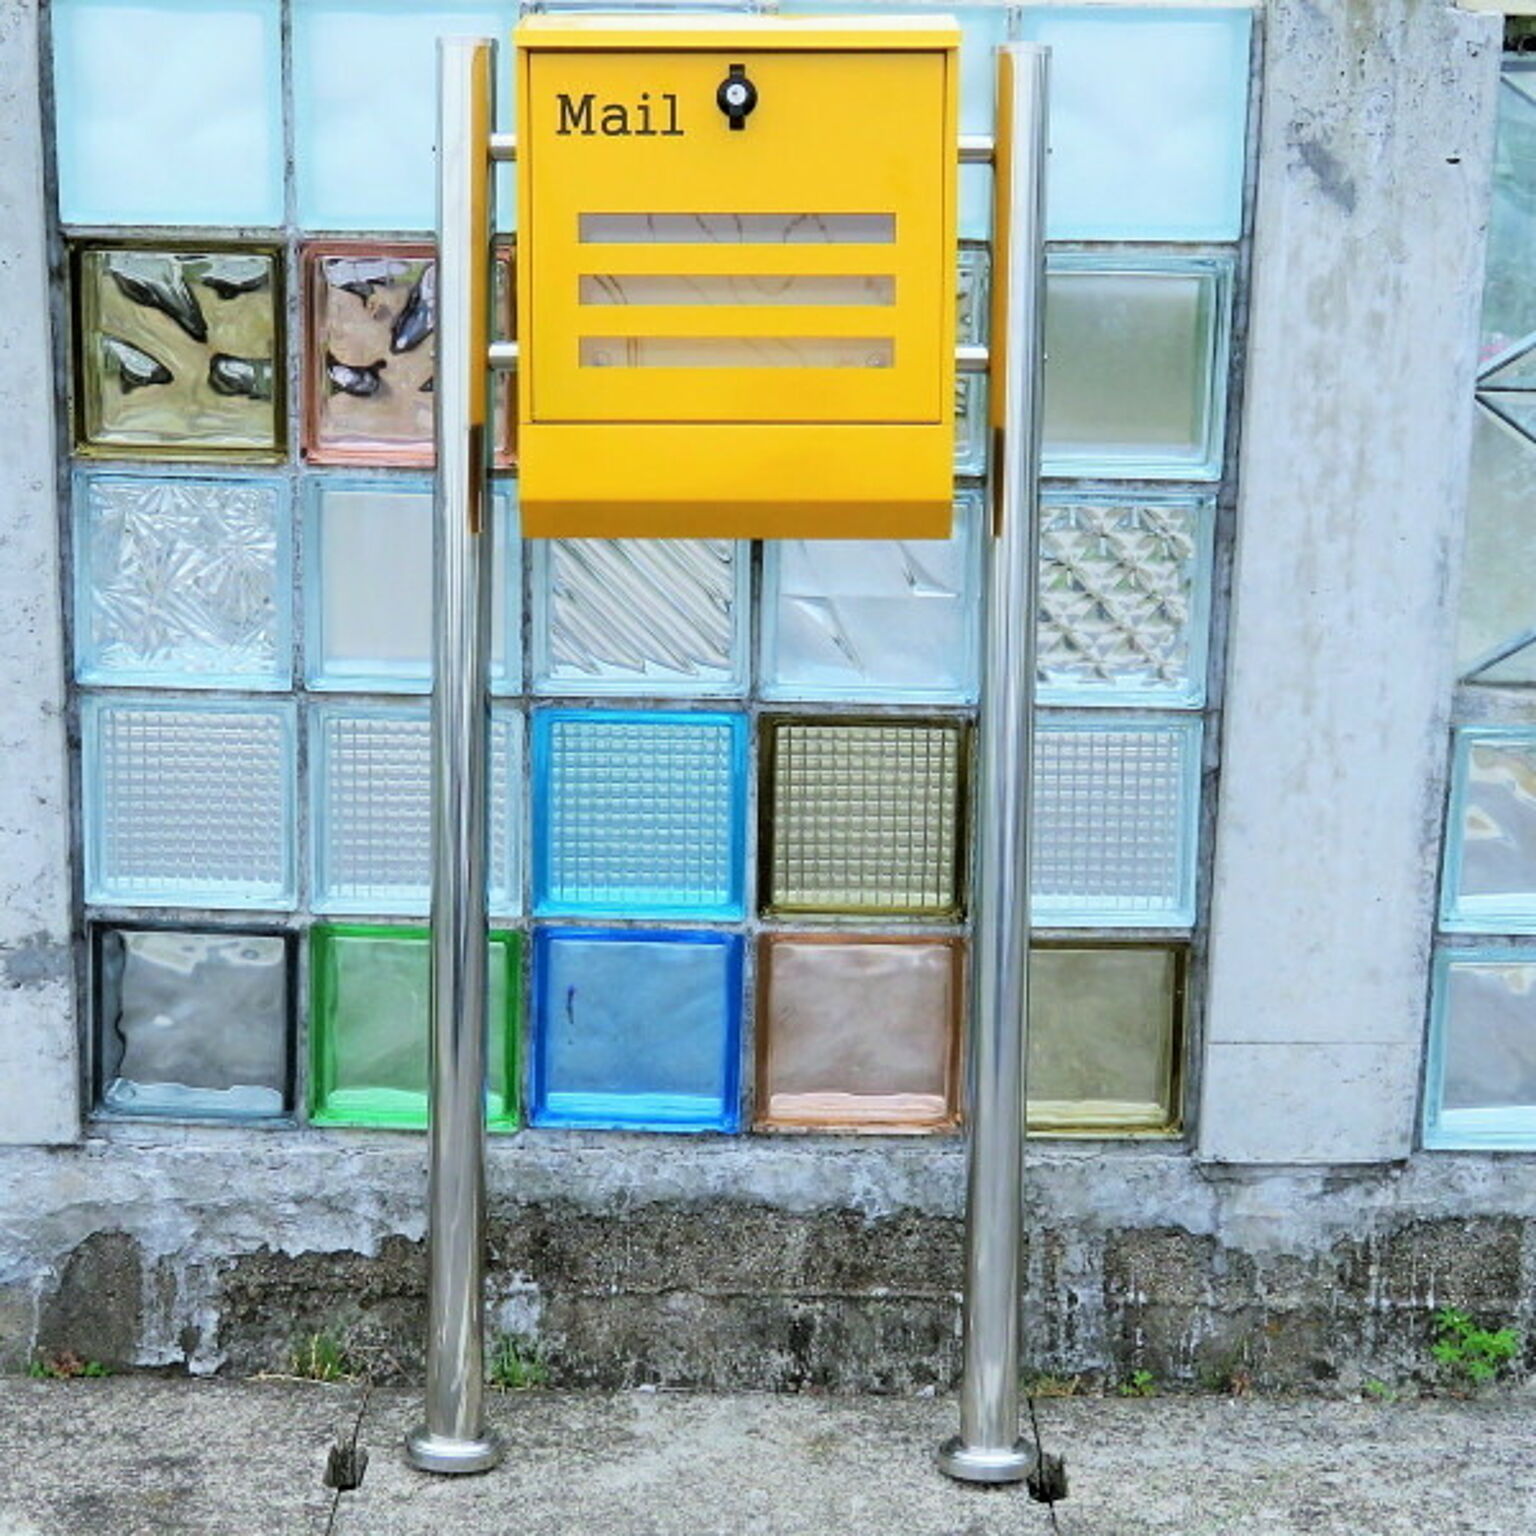 郵便ポスト 郵便受け 錆びにくい メールボックス スタンドタイプ イエロー黄色 ステンレスポスト(yellow)